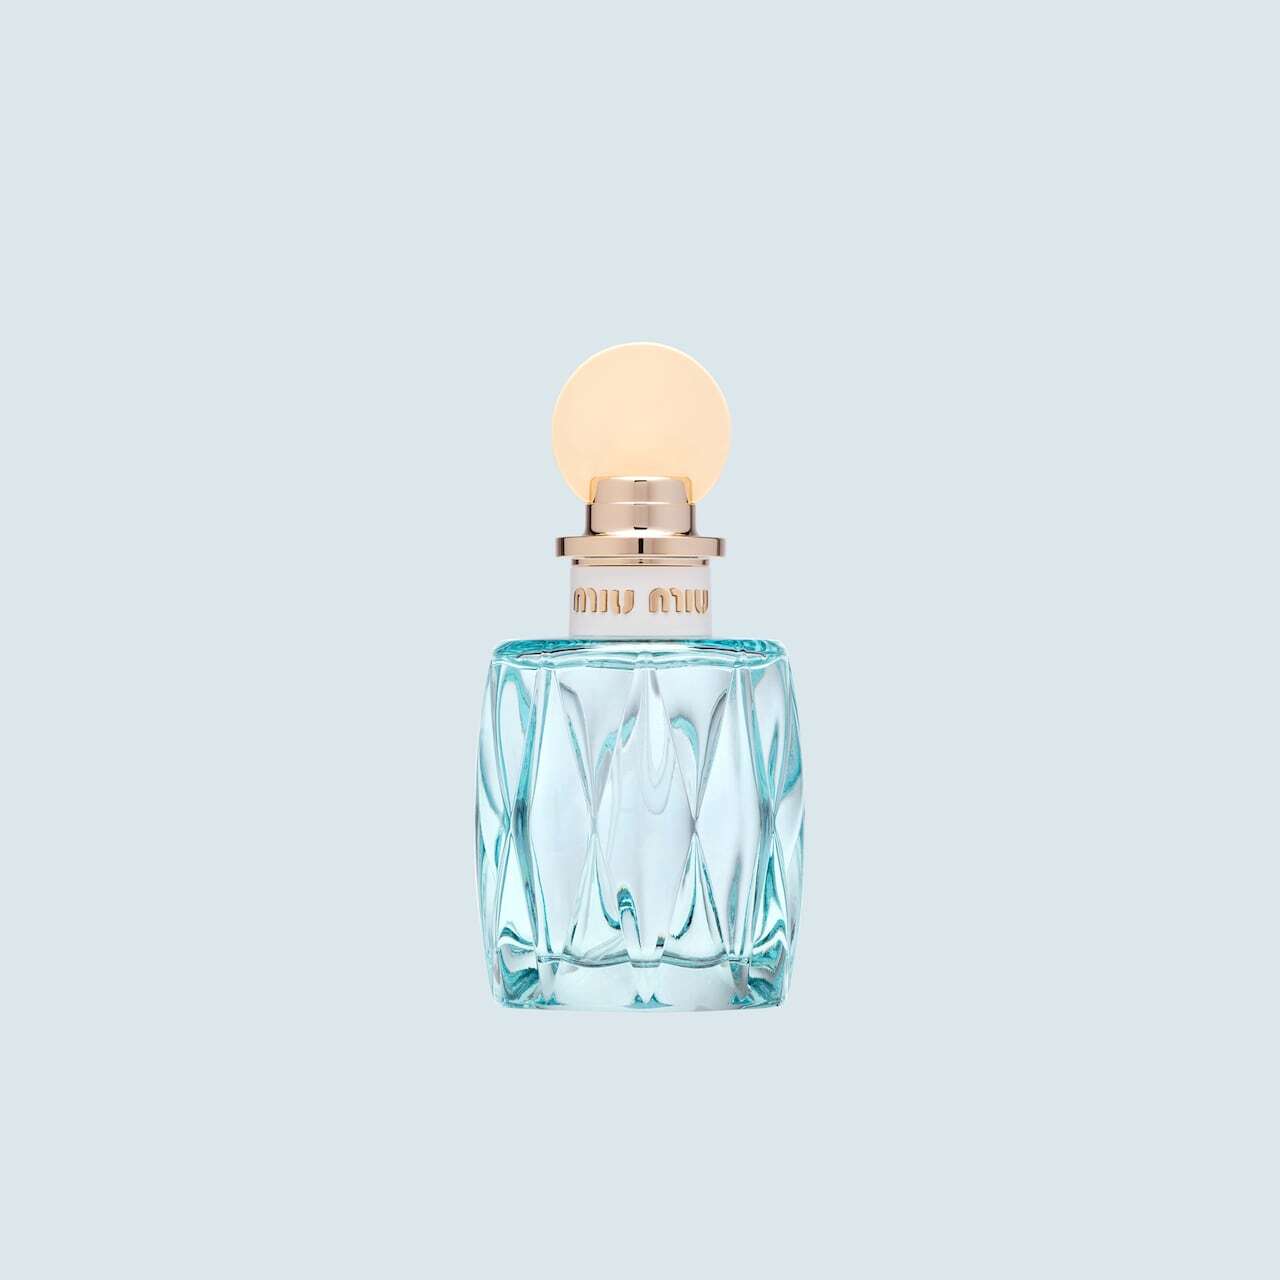 Miu Miu L eau Bleue eau de parfum / 100 ml / dames